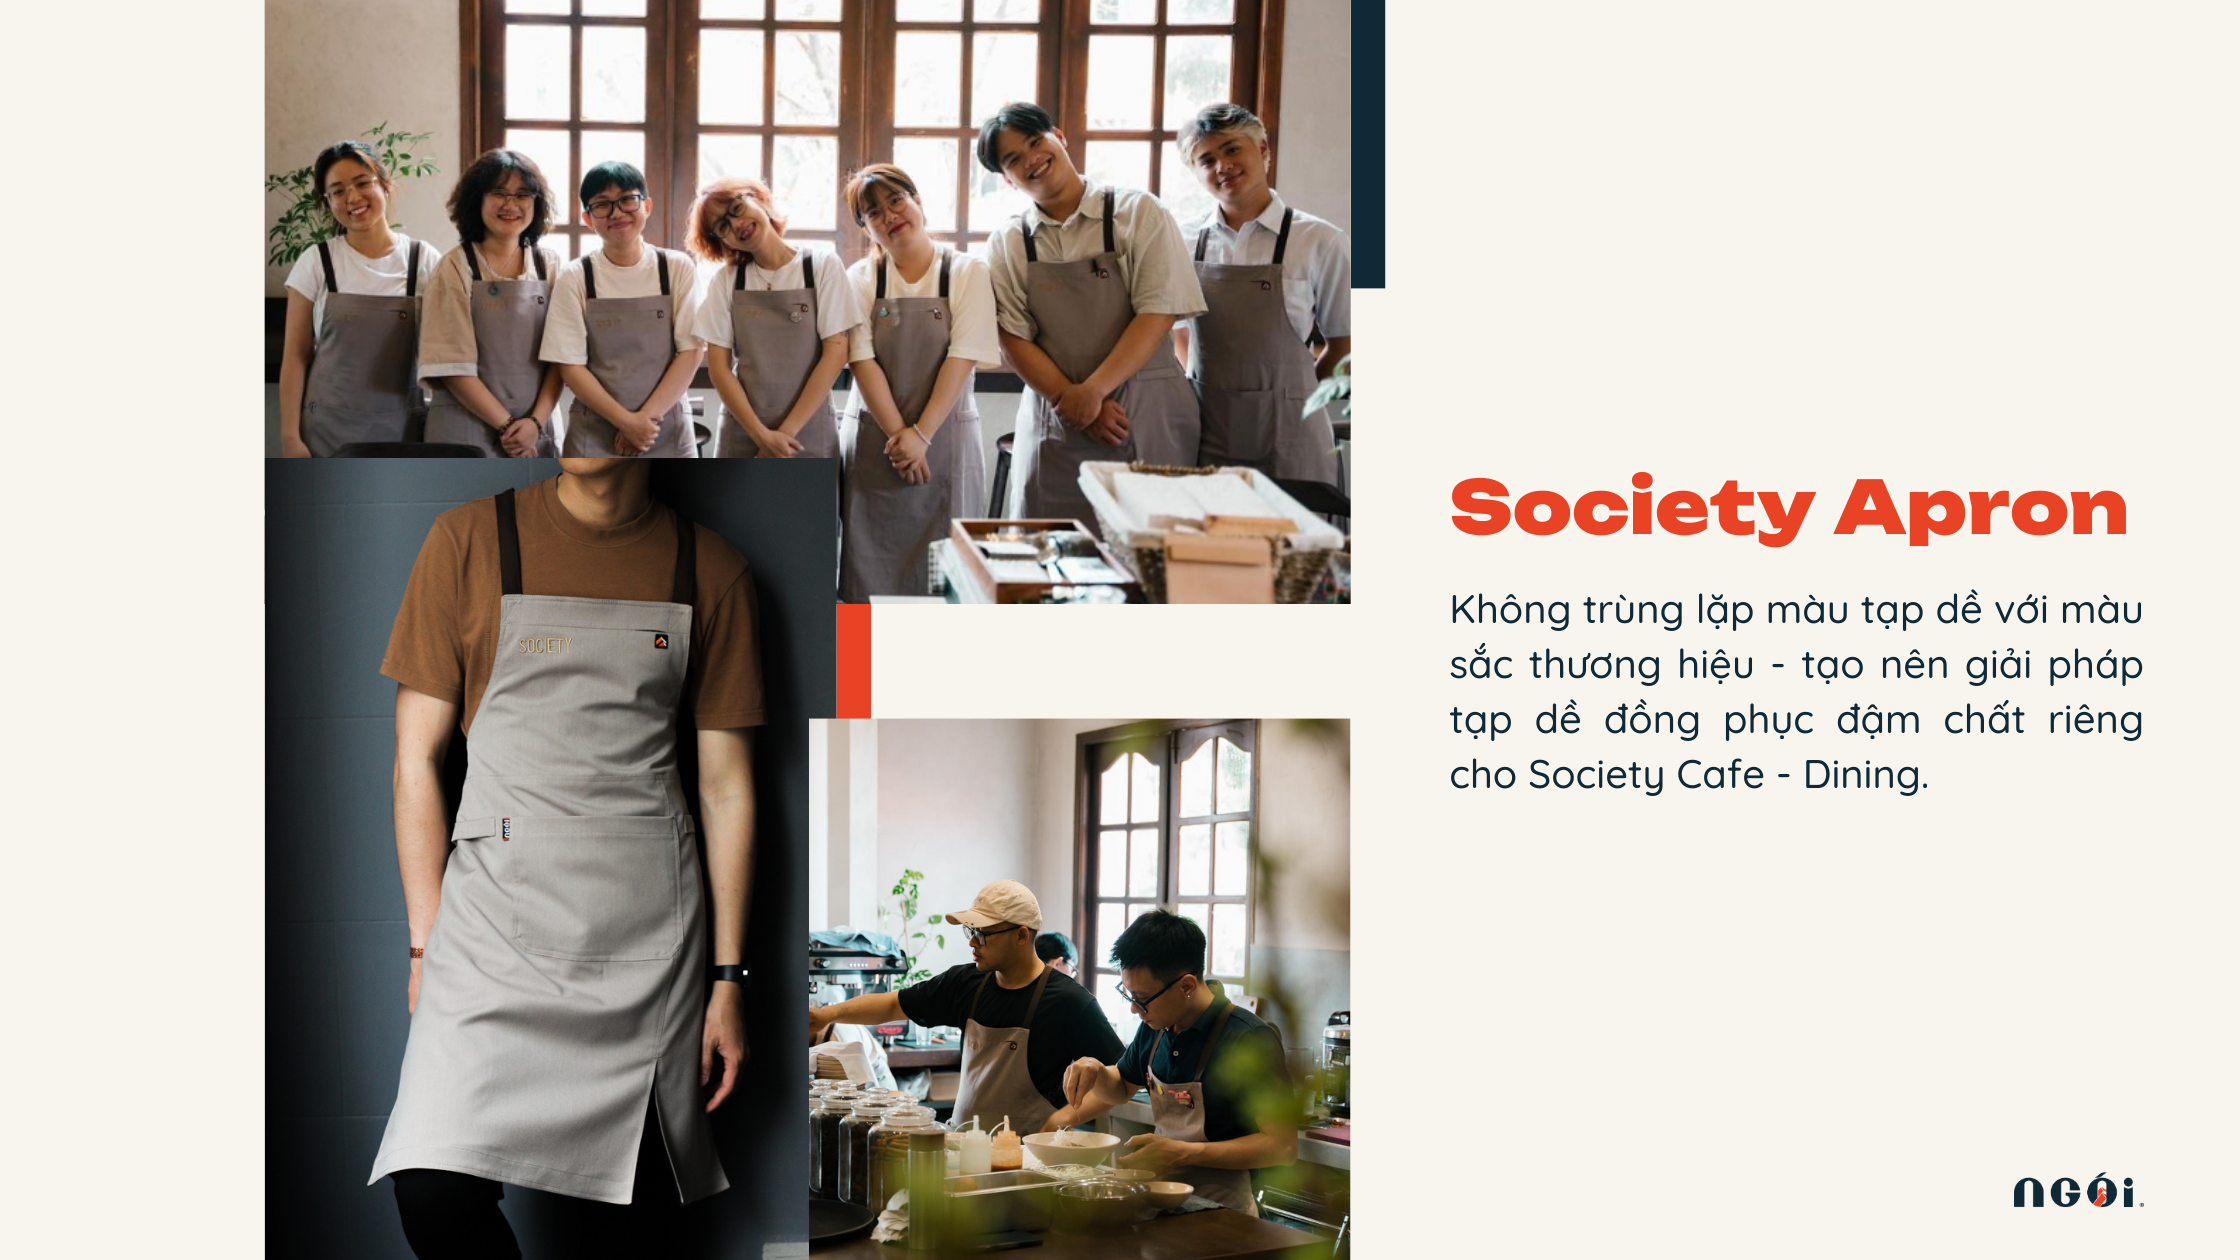 Tạp dề đồng phục của Society Cafe - Dining